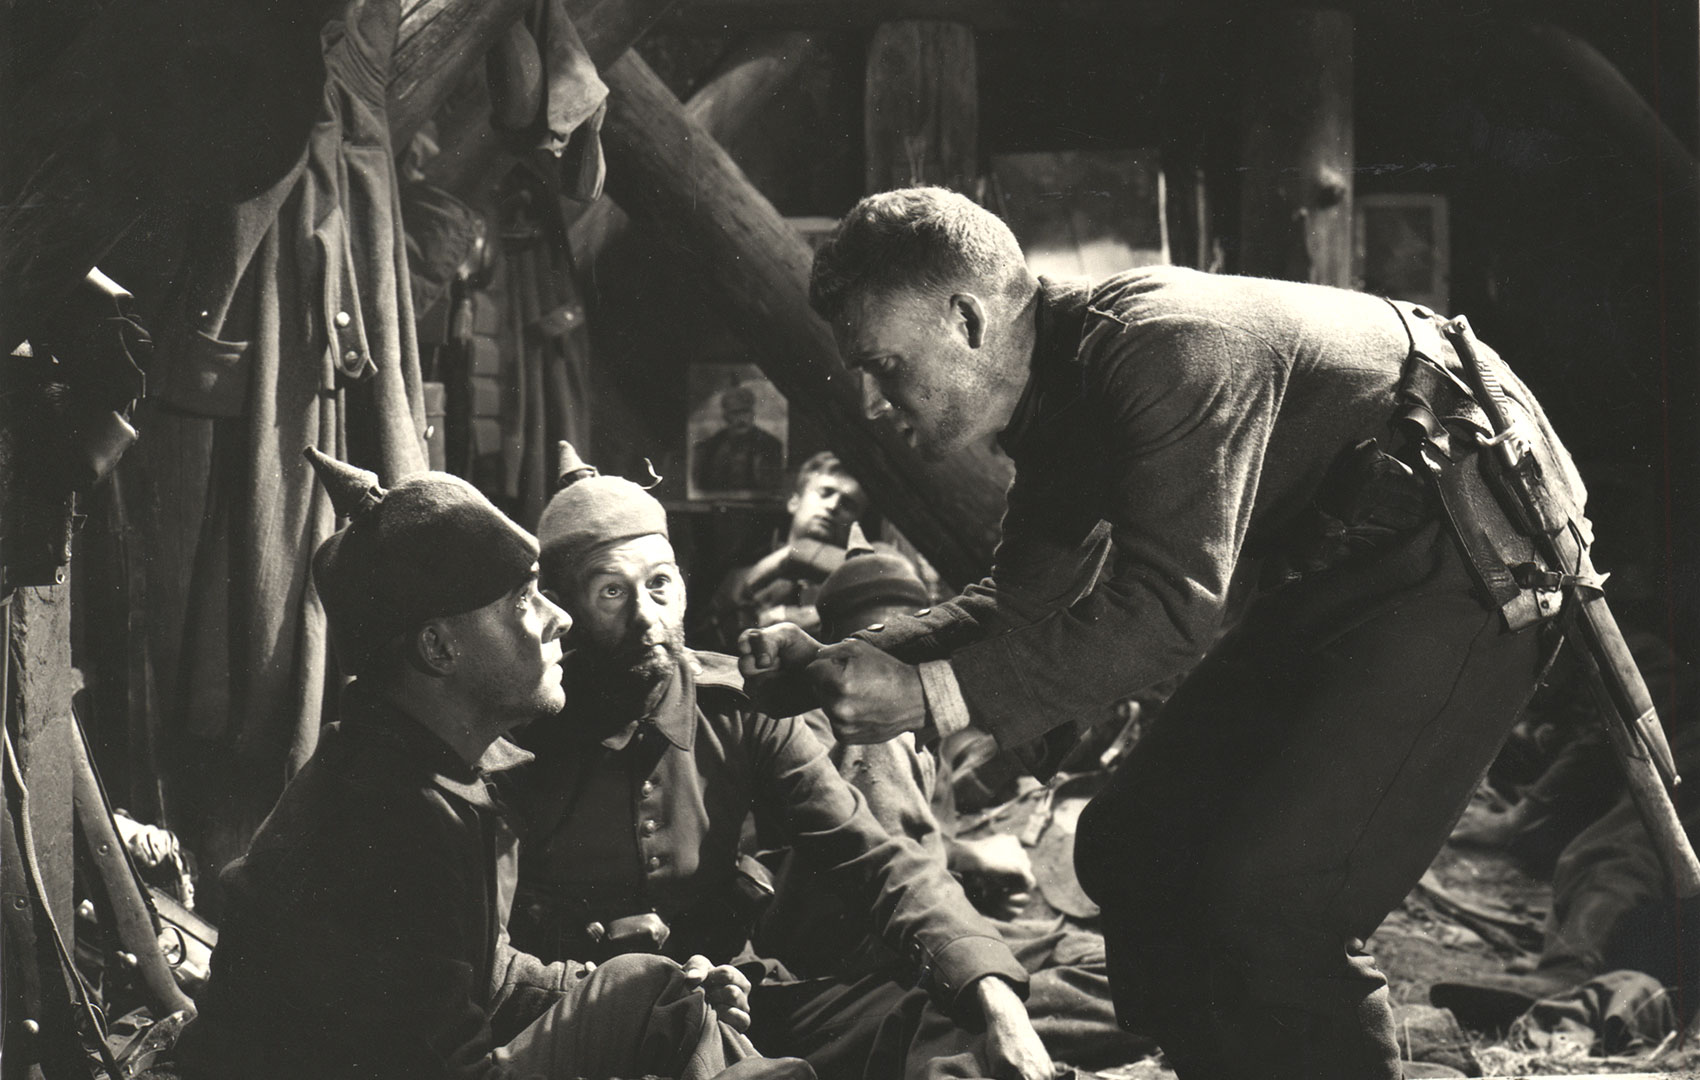 Schwarz-Weiß-Bild: Männer in Uniform des Ersten Weltkriegs sitzen in einm Kriegslager und unterhalten sich.